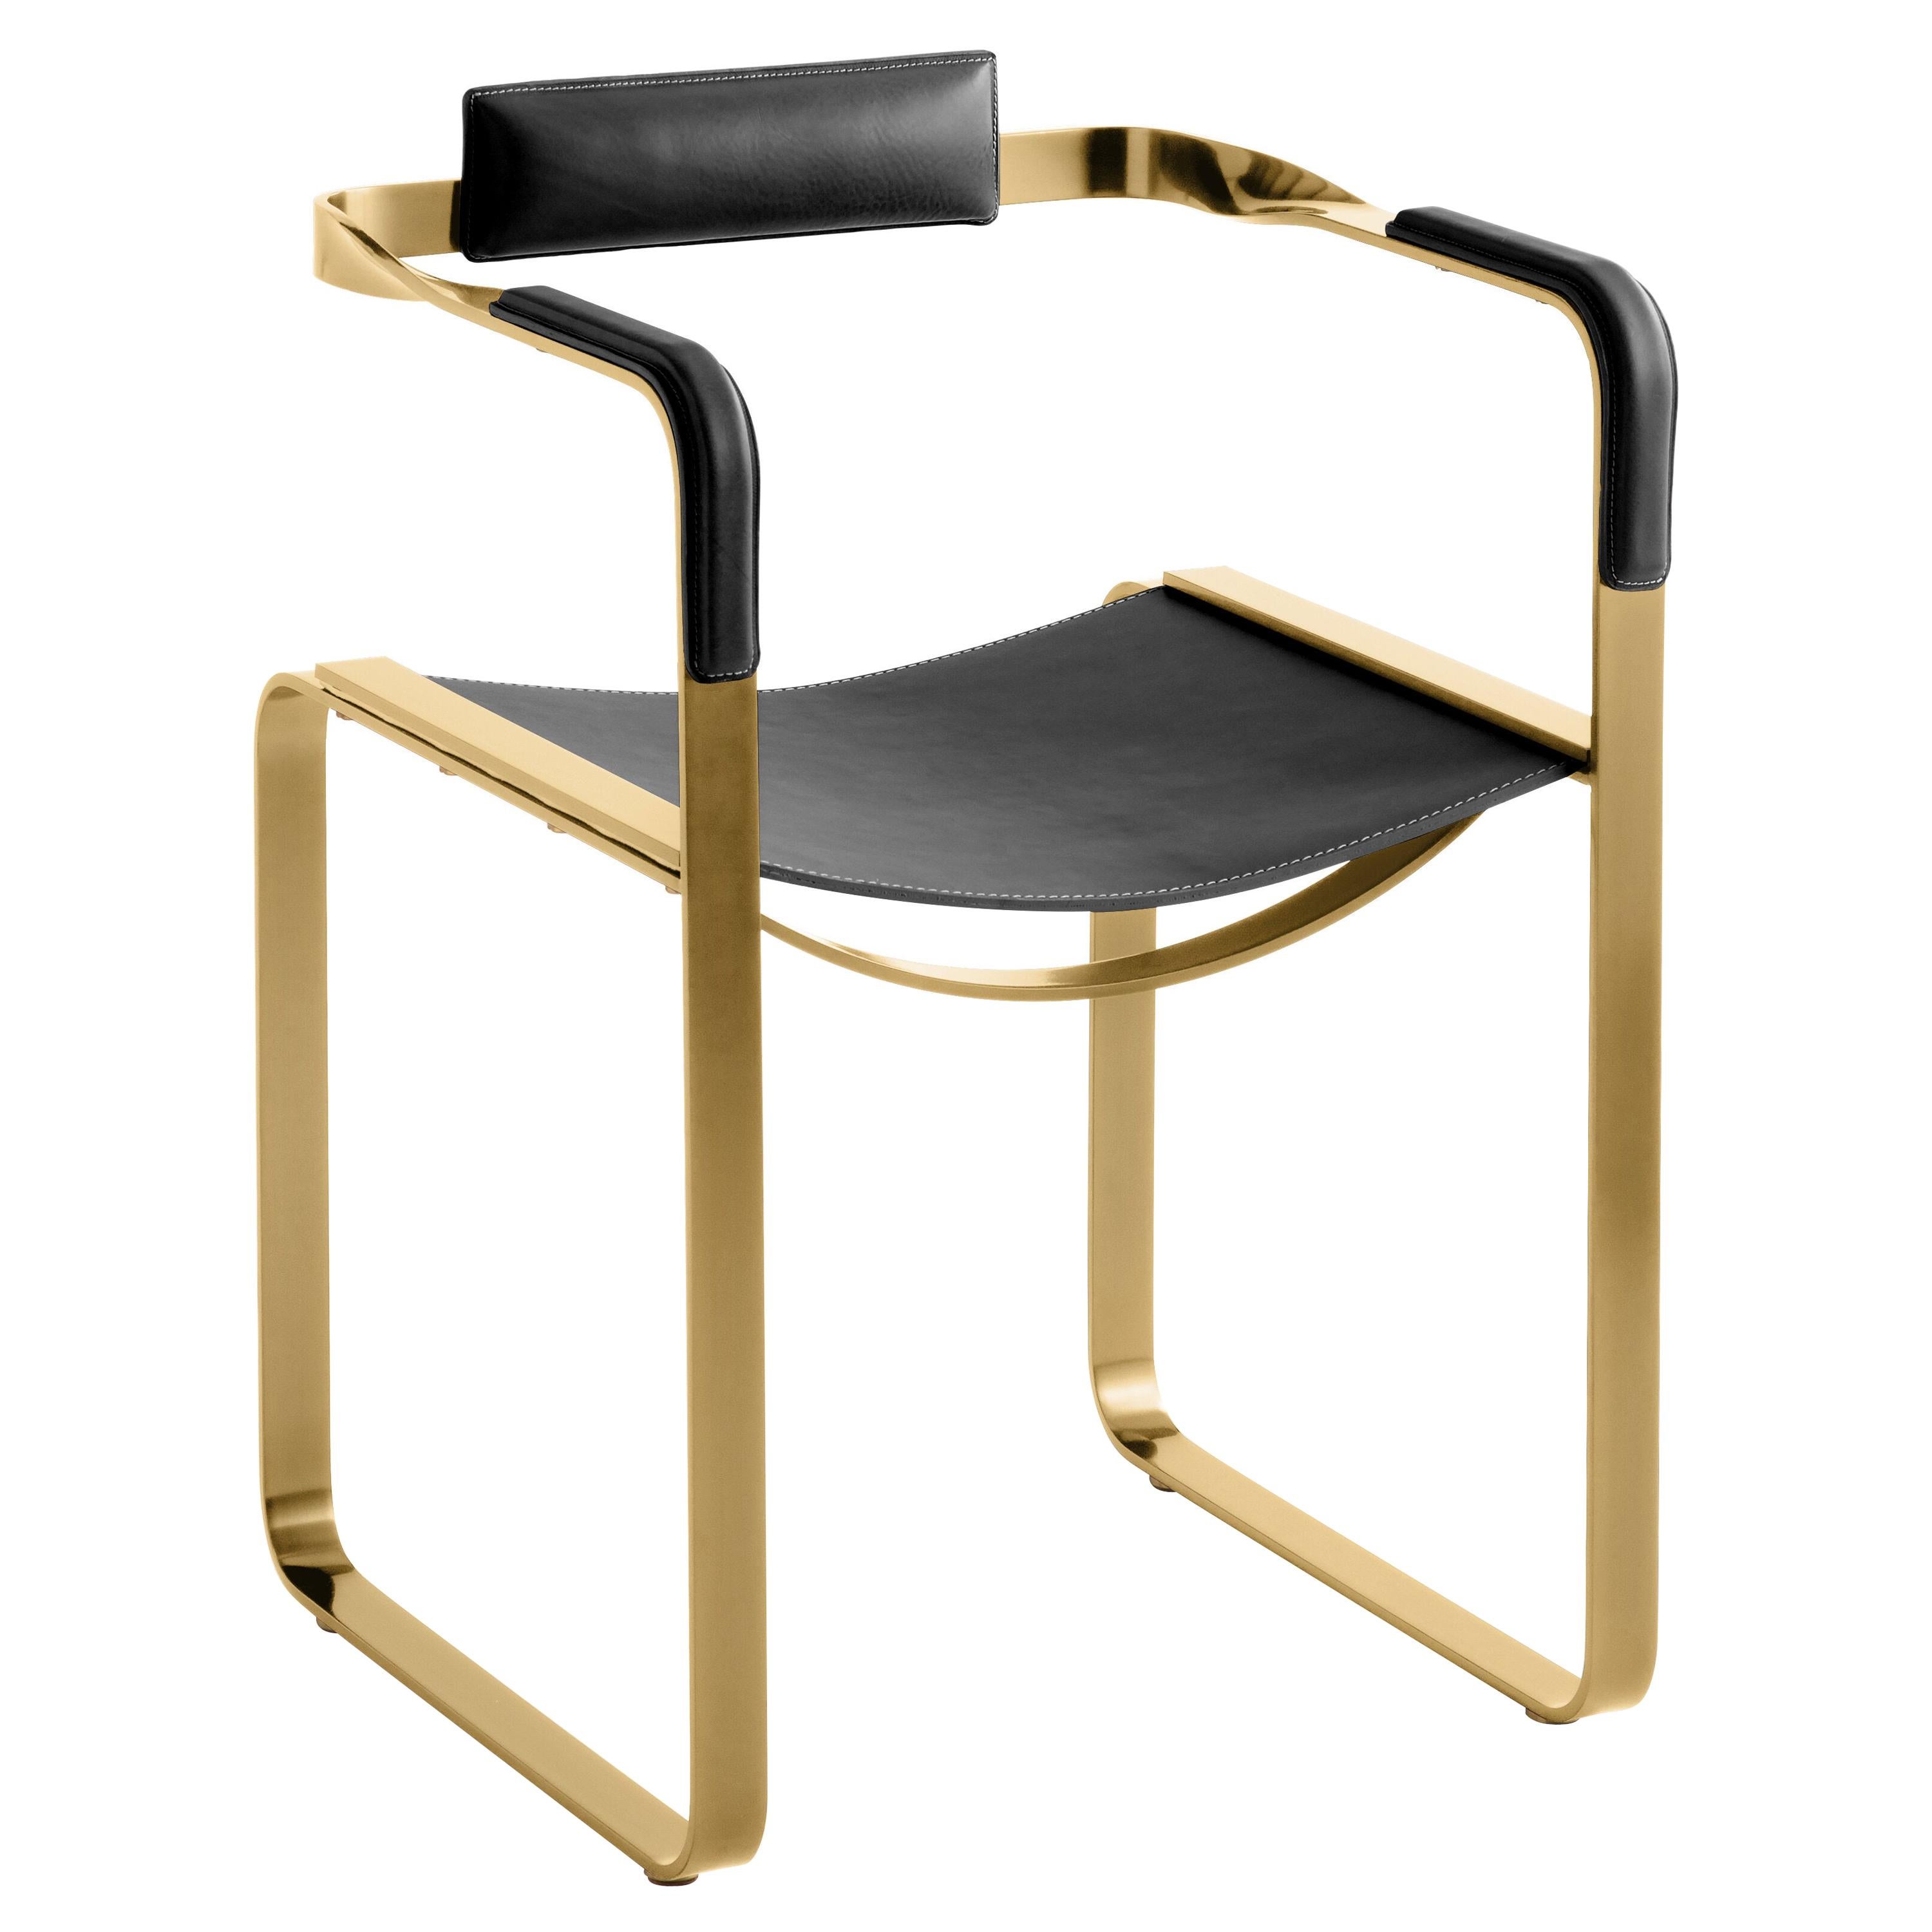 Sessel, Altmessing-Stahl und schwarzes Sattelleder, Contemporary Style